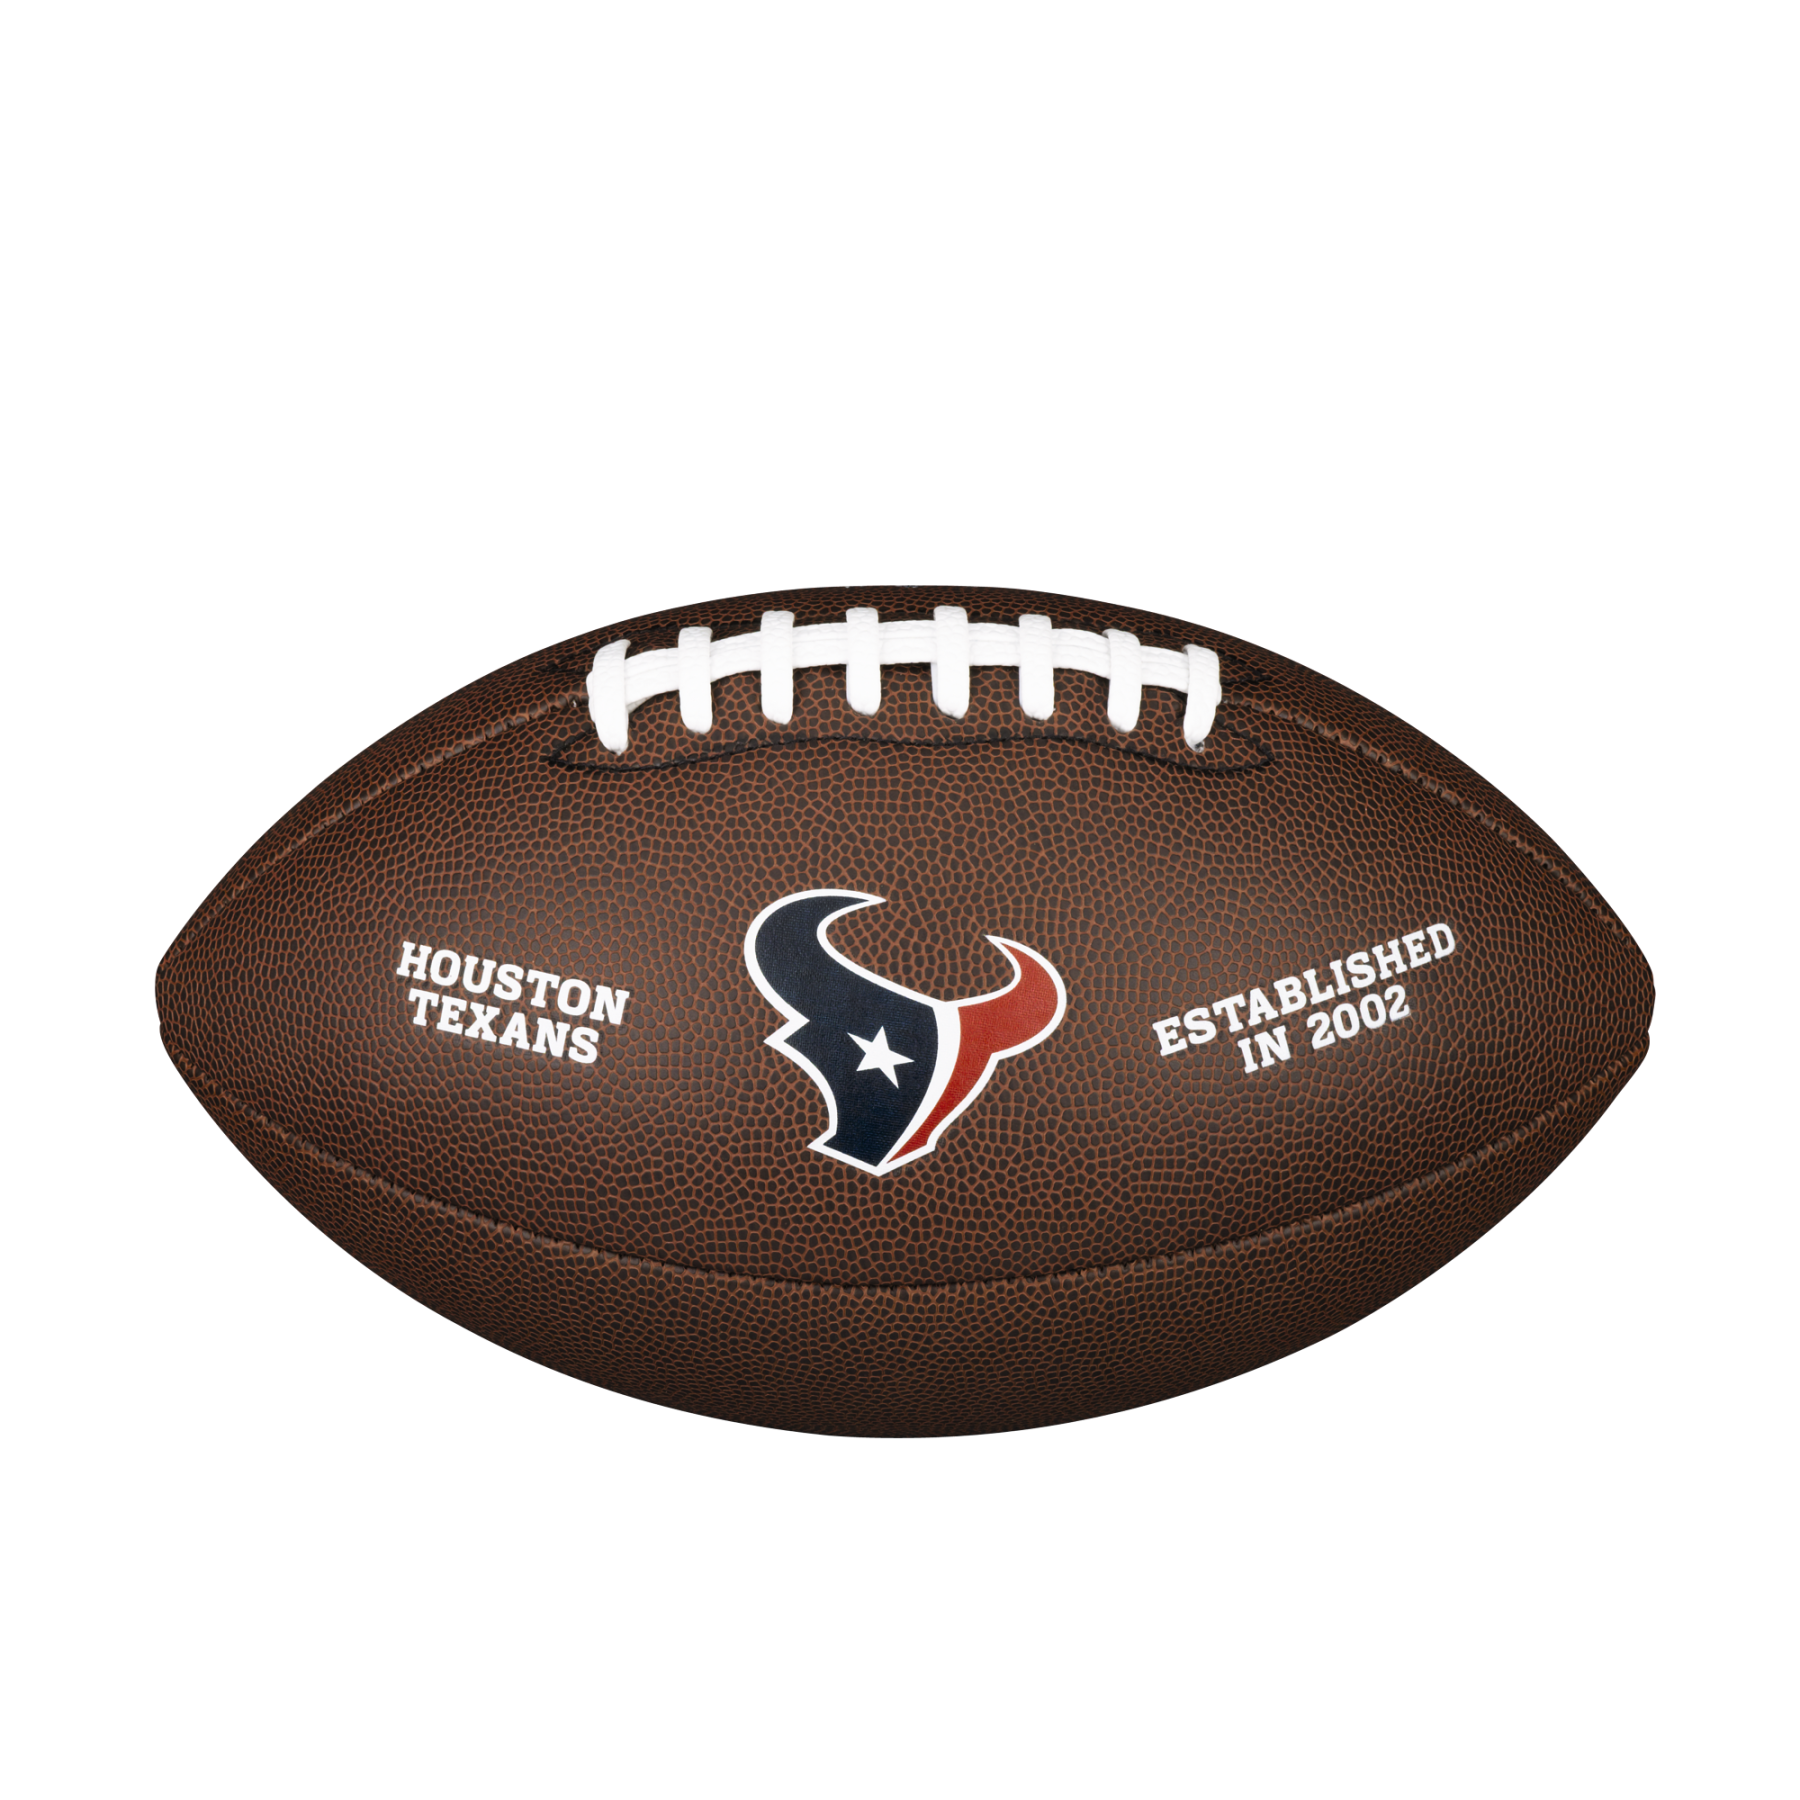 Ballon Wilson Texans NFL Licensed